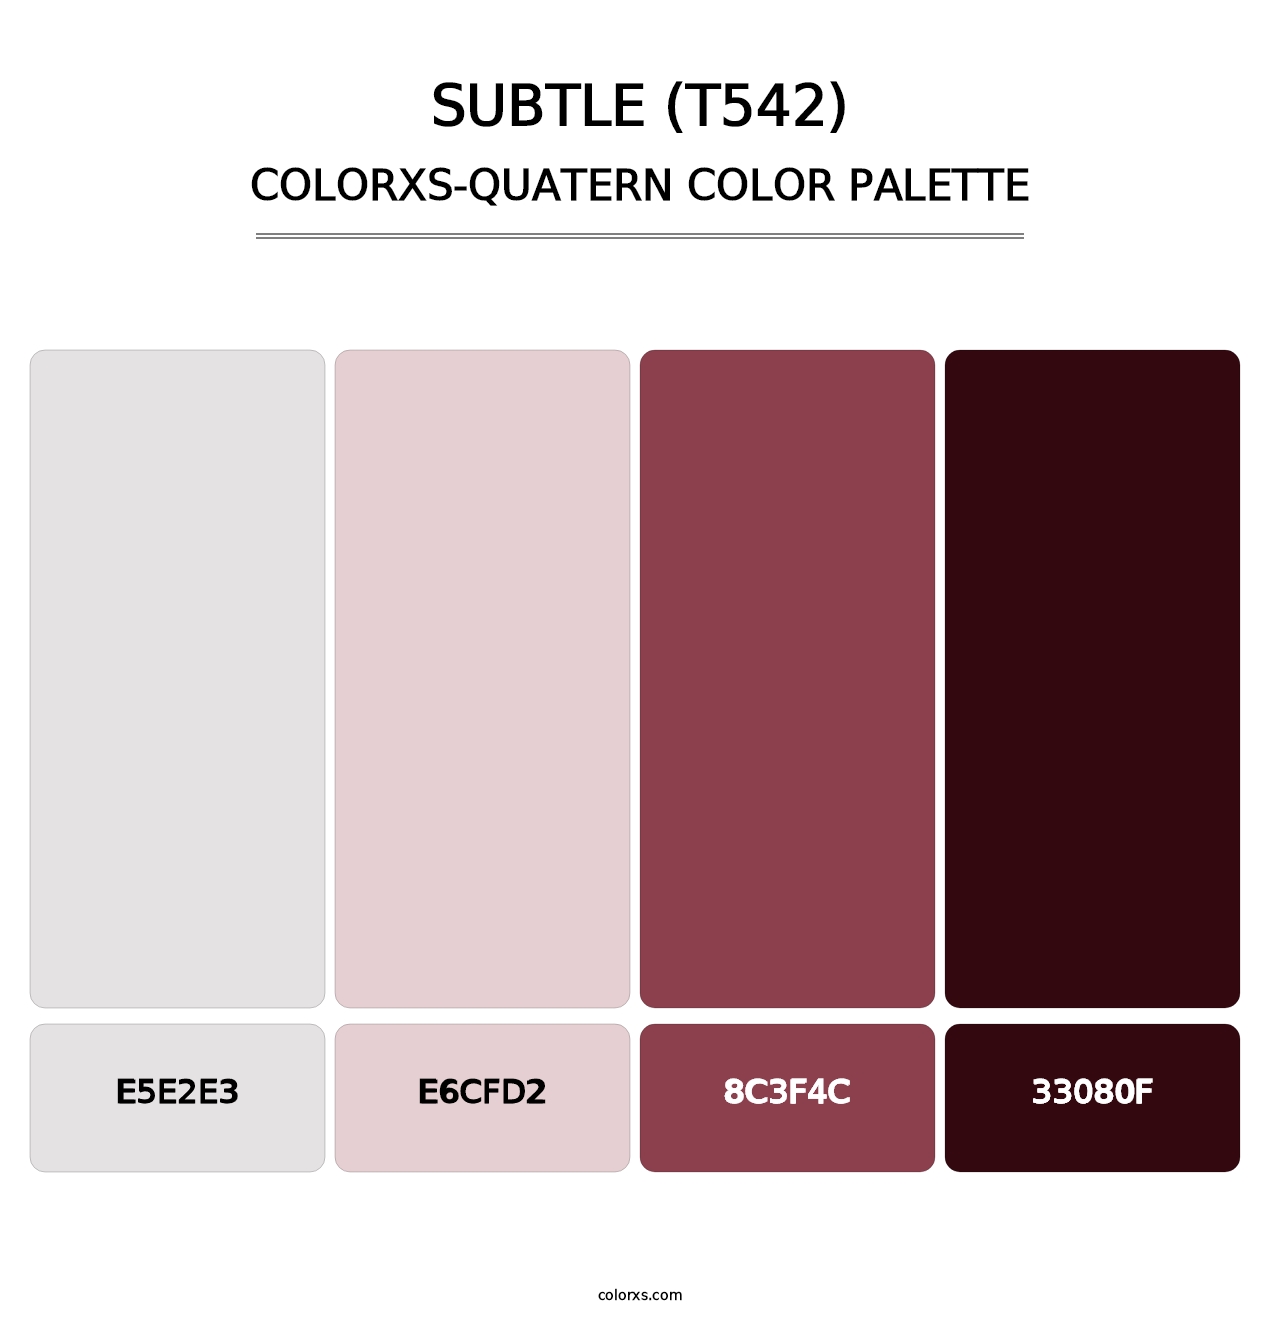 Subtle (T542) - Colorxs Quatern Palette